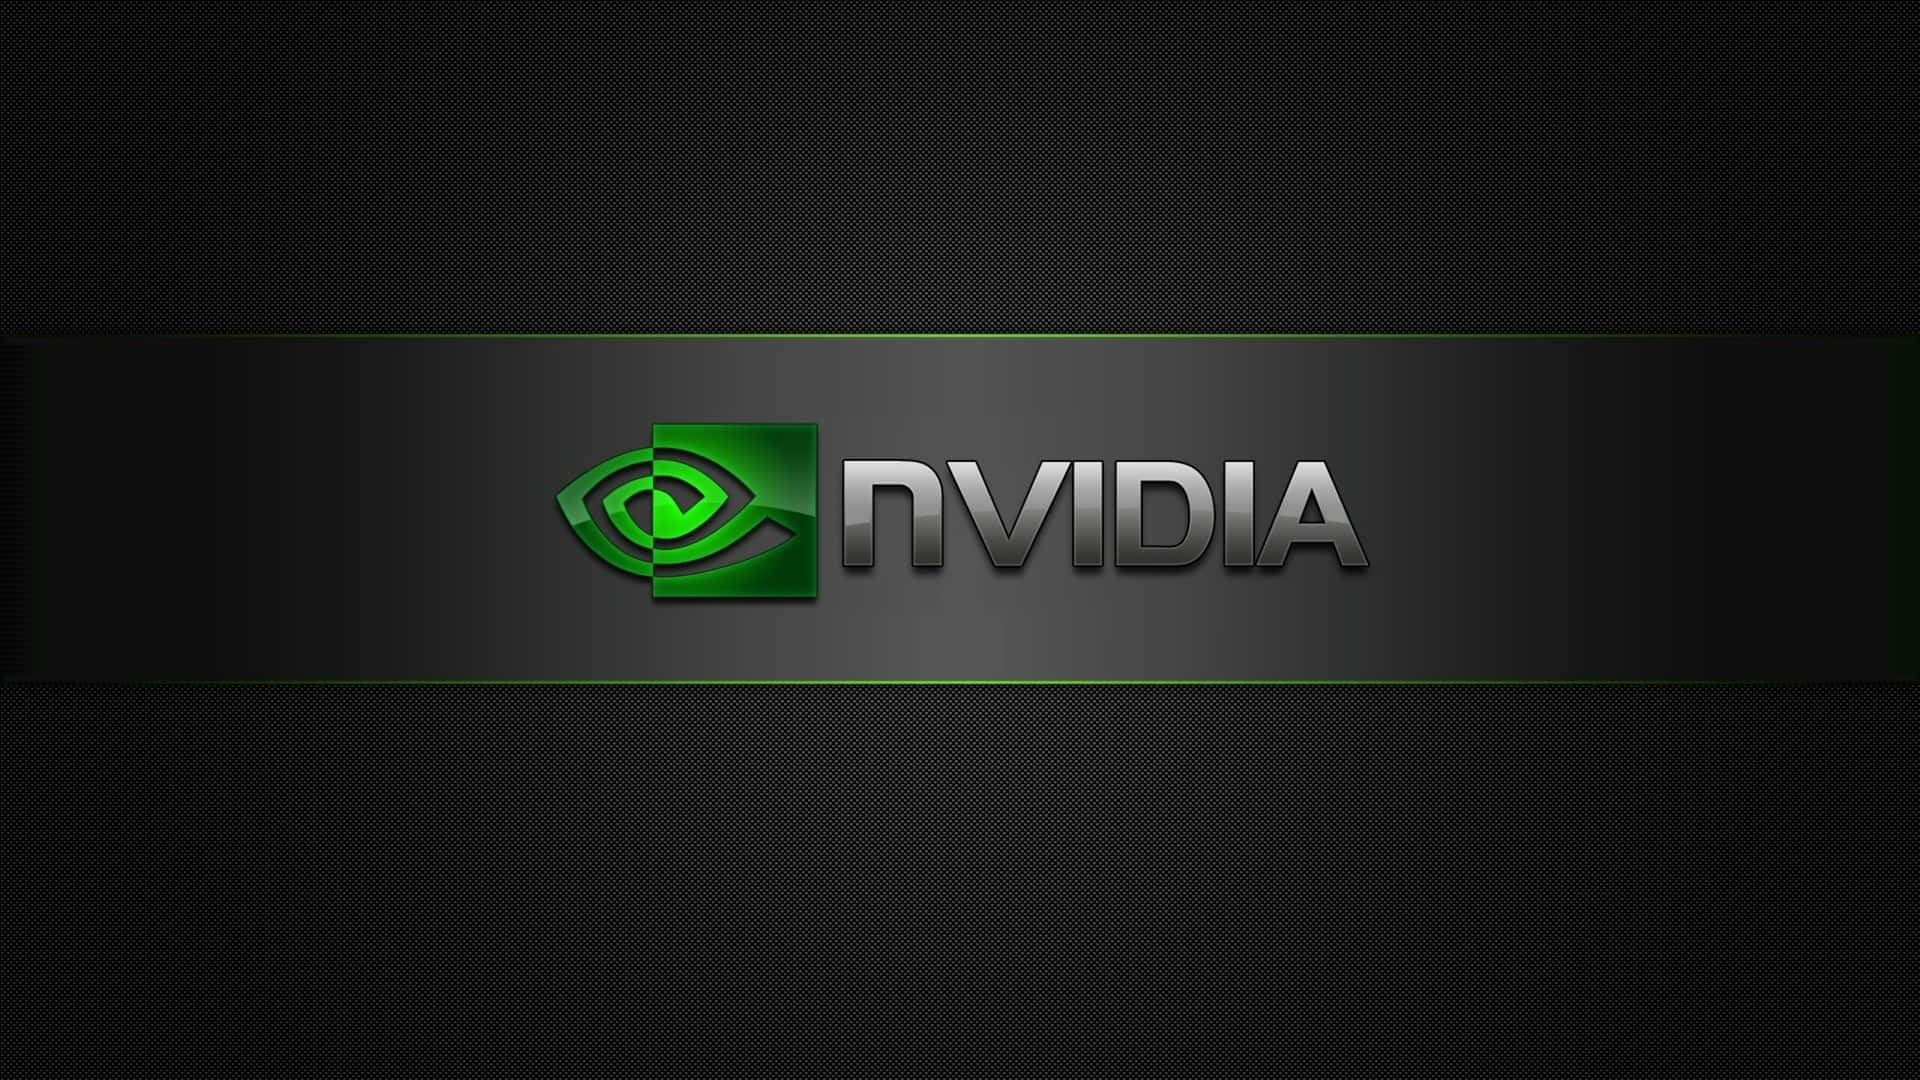 Logotipode Nvidia En Un Fondo Negro